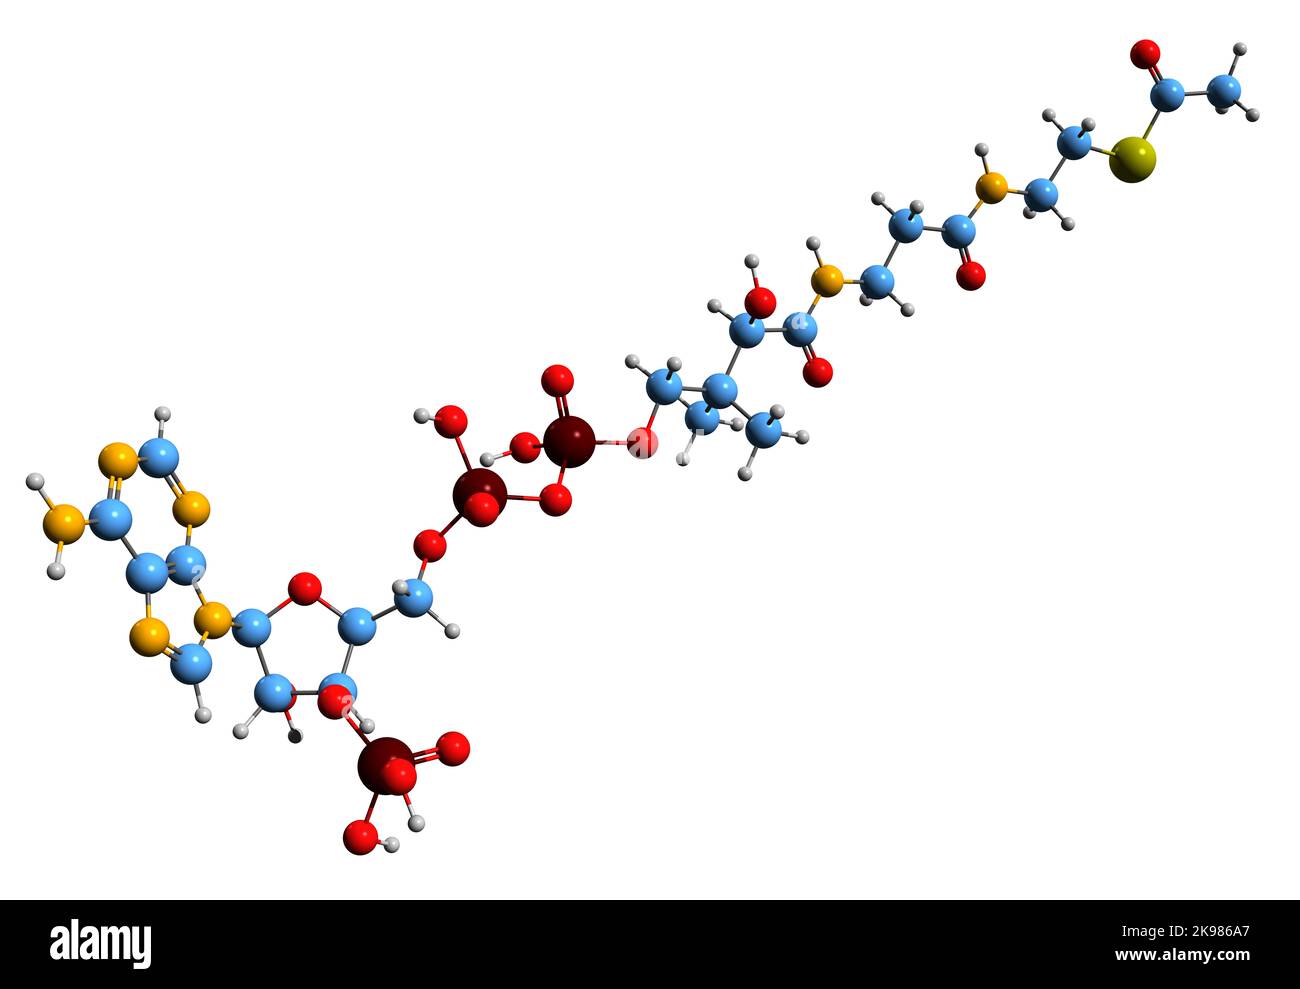 3D Bild der Acetyl-CoA-Skelettformel - molekulare chemische Struktur des Acetyl-Coenzym A isoliert auf weißem Hintergrund Stockfoto